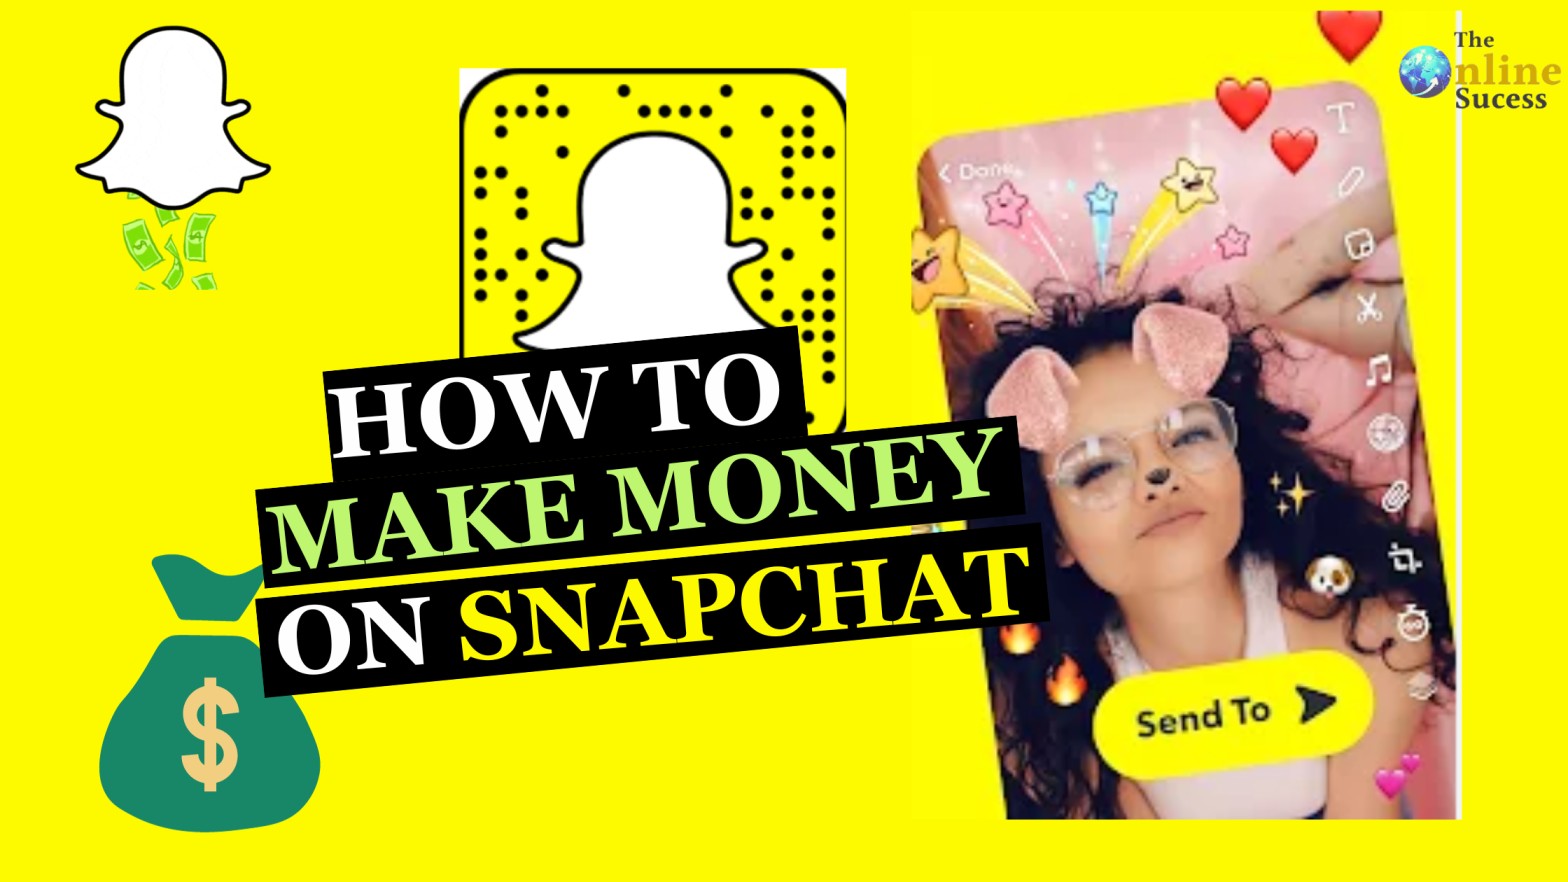 Make Money on Snapchat